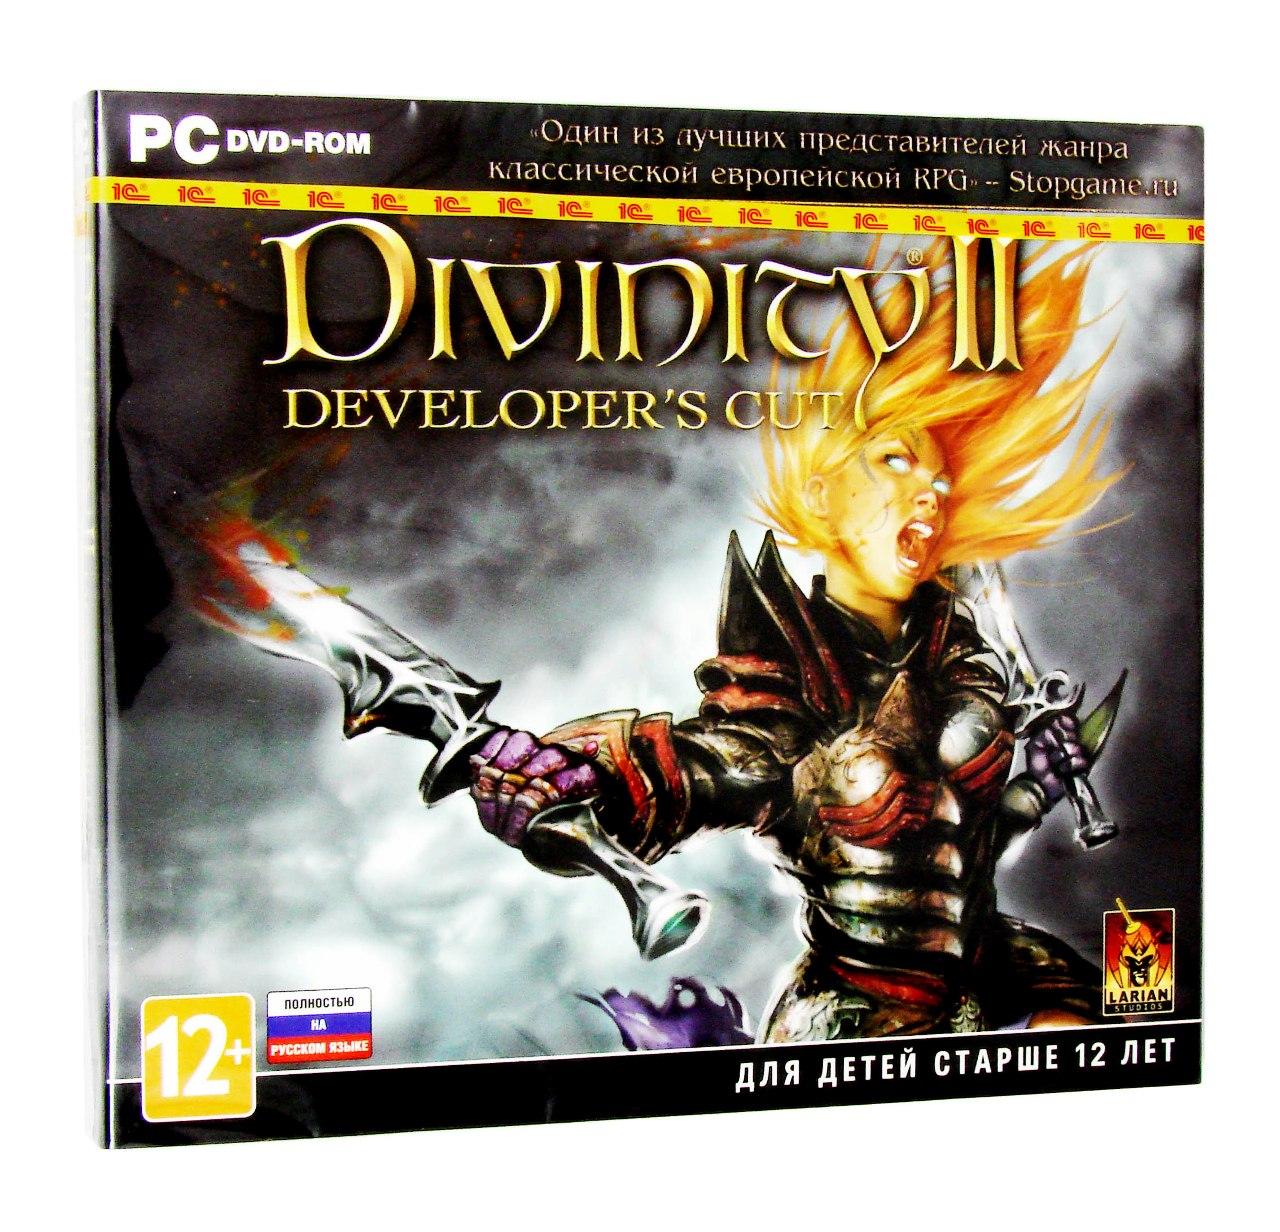 Компьютерный компакт-диск Divinity 2: Developer’s Cut (PC), фирма "1C", 1DVD